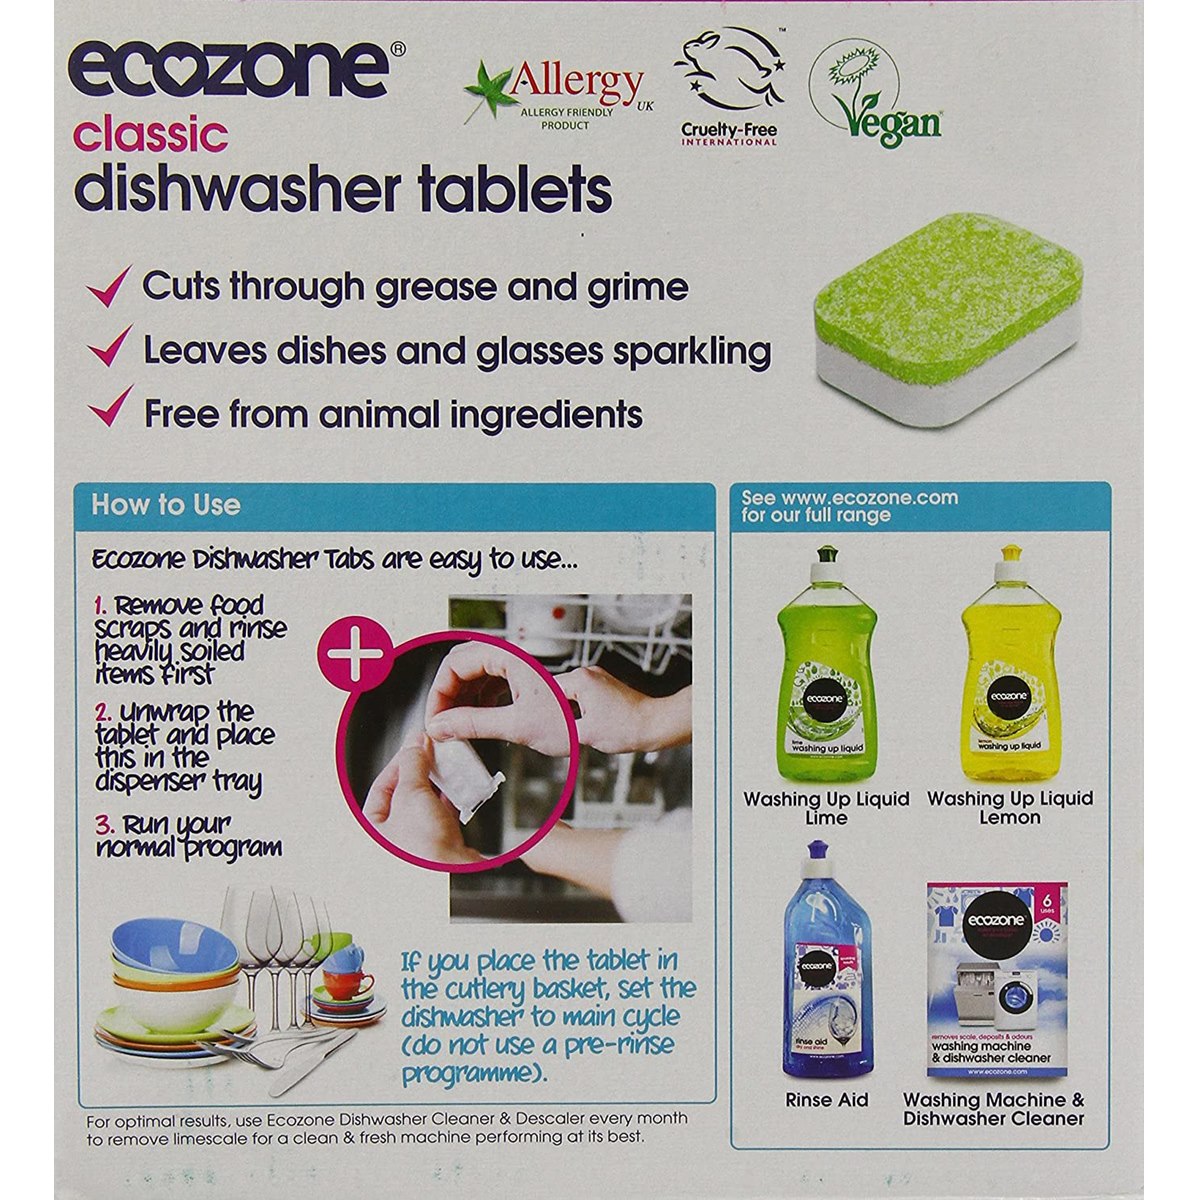 Ecozone Classic Dishwasher Tablets Usage Instructions